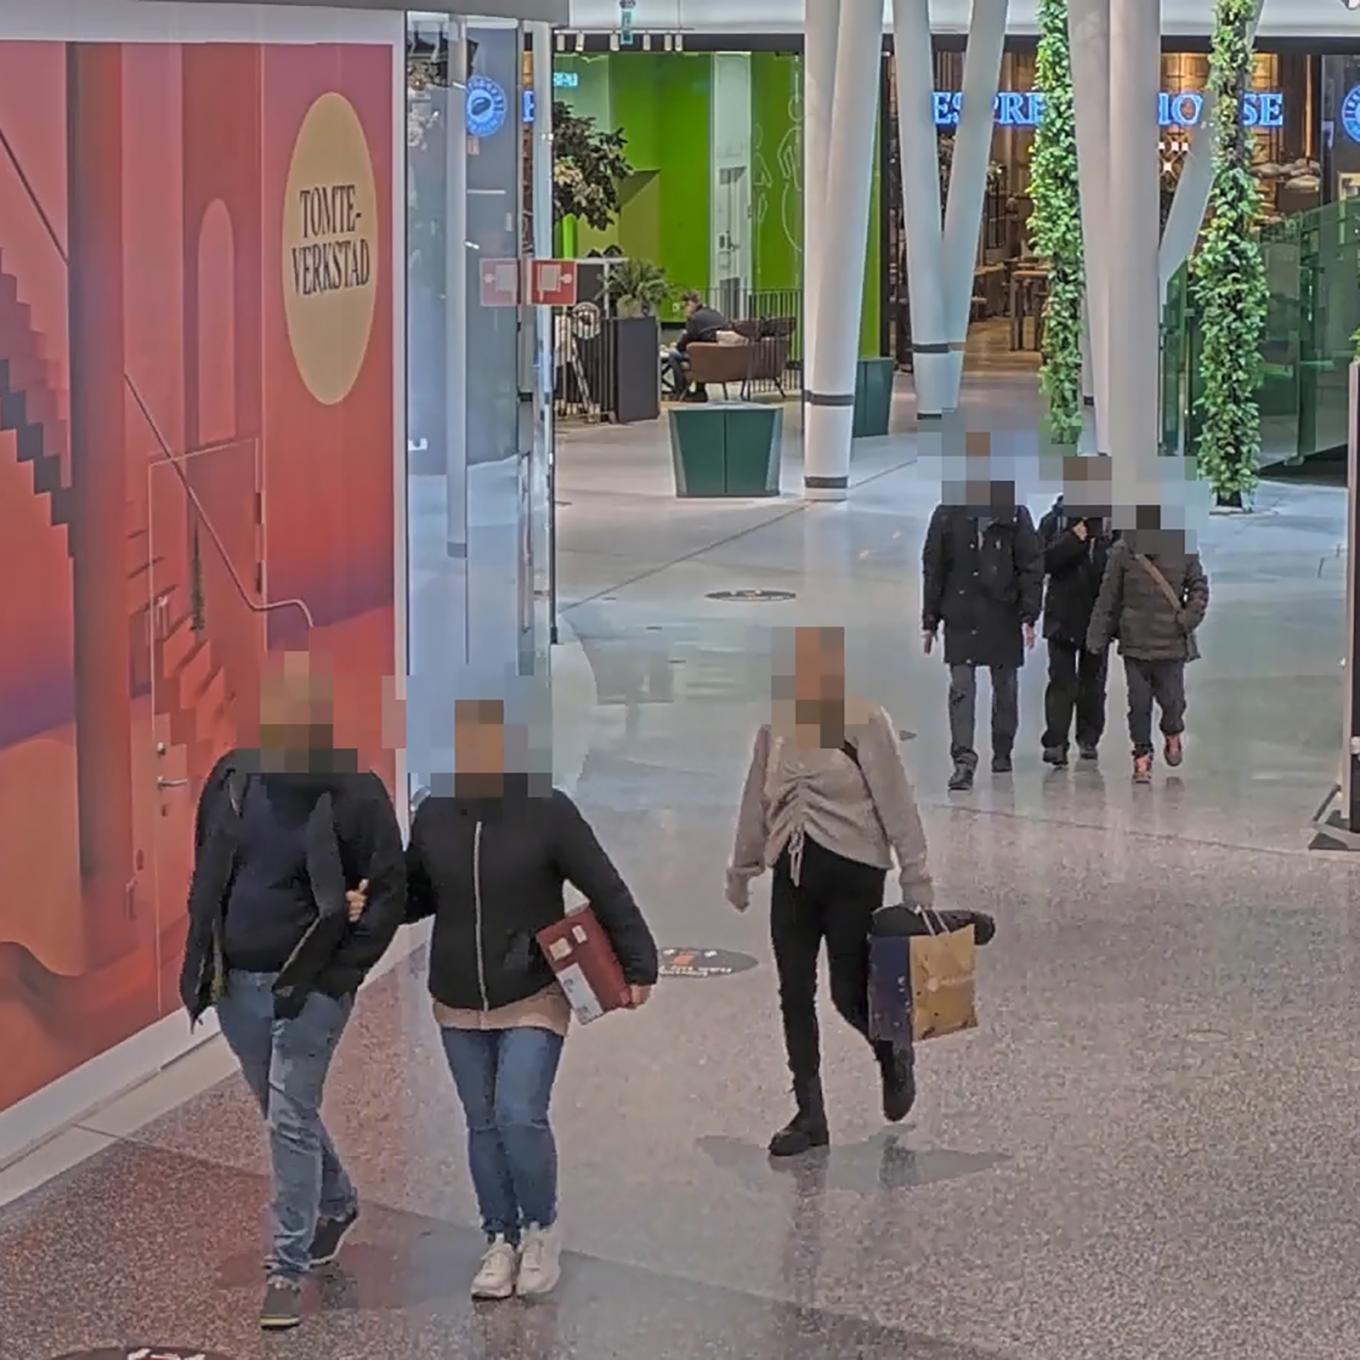 Espaço público com pessoas com rostos desfocados devido ao AXIS Live Privacy Shield.